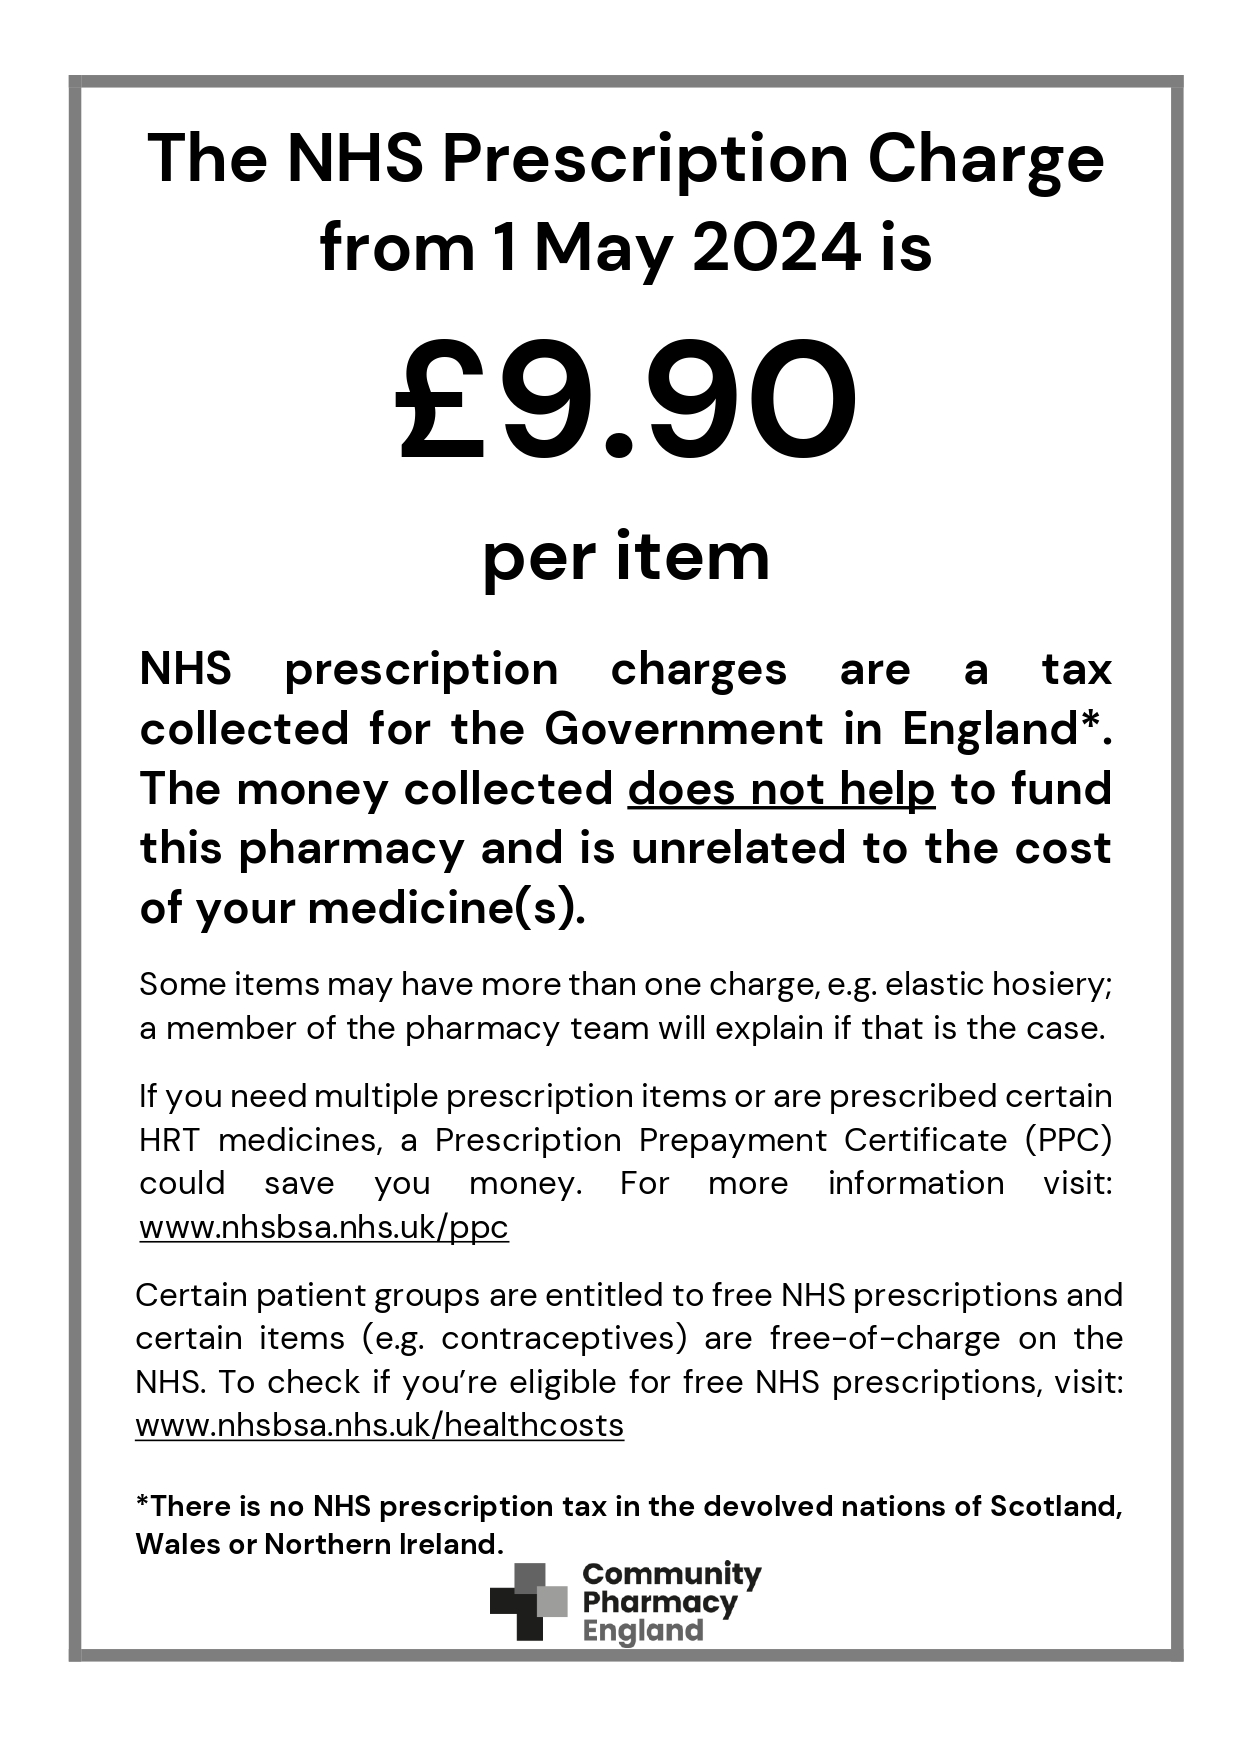 Prescription charges